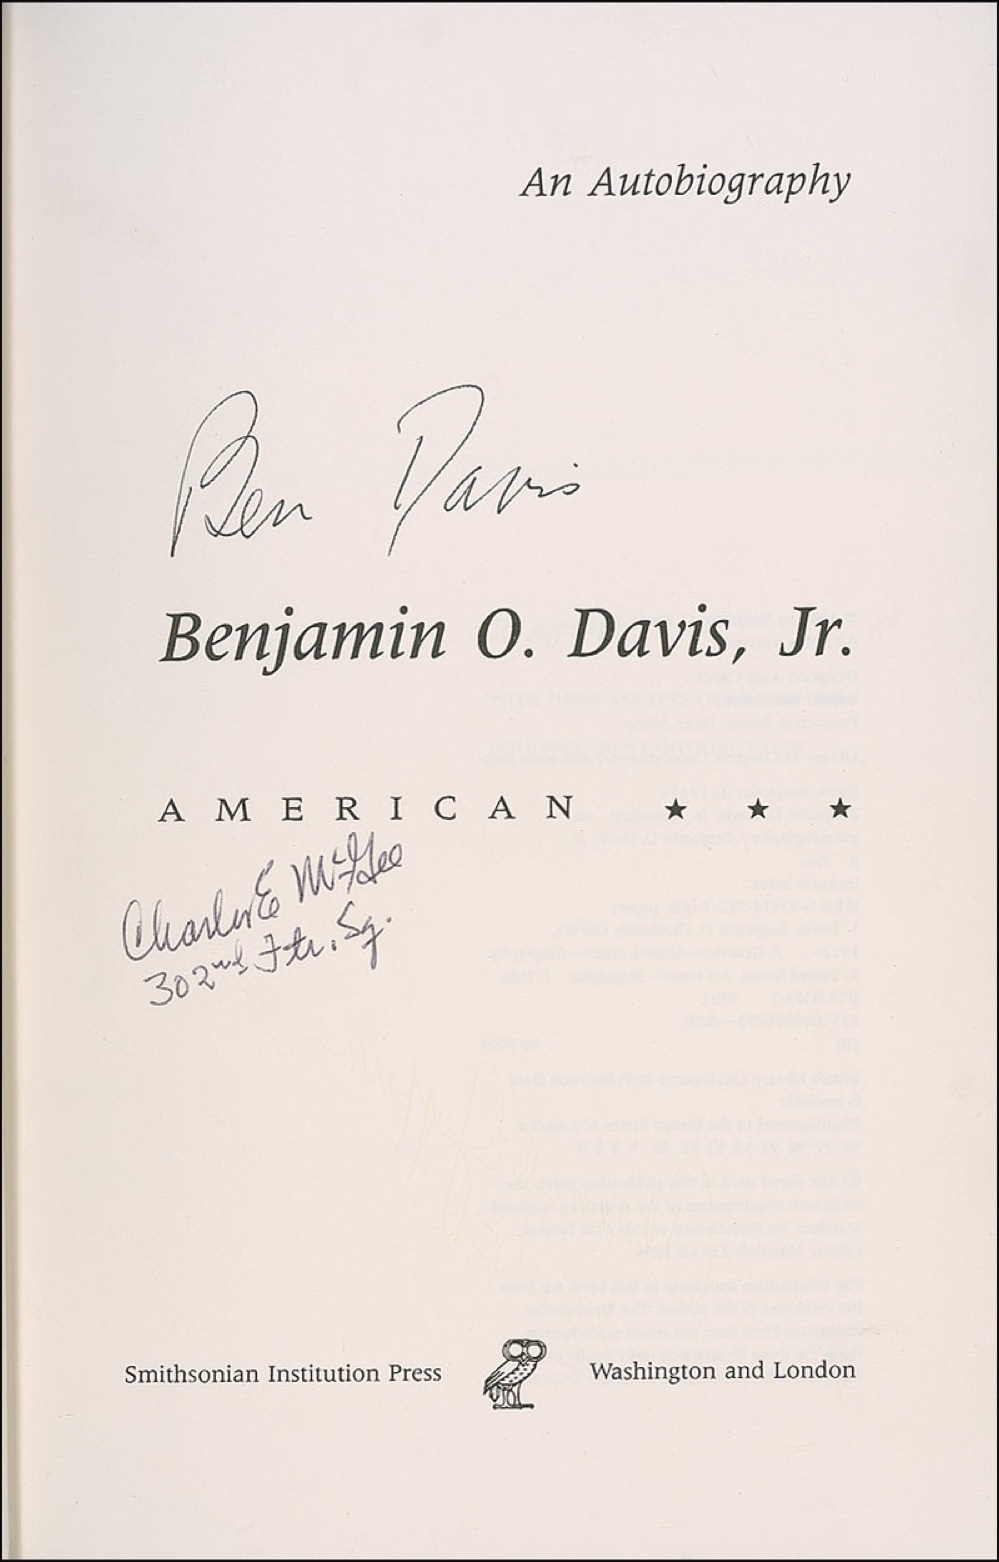 Lot #284 Benjamin O. Davis, Jr and African